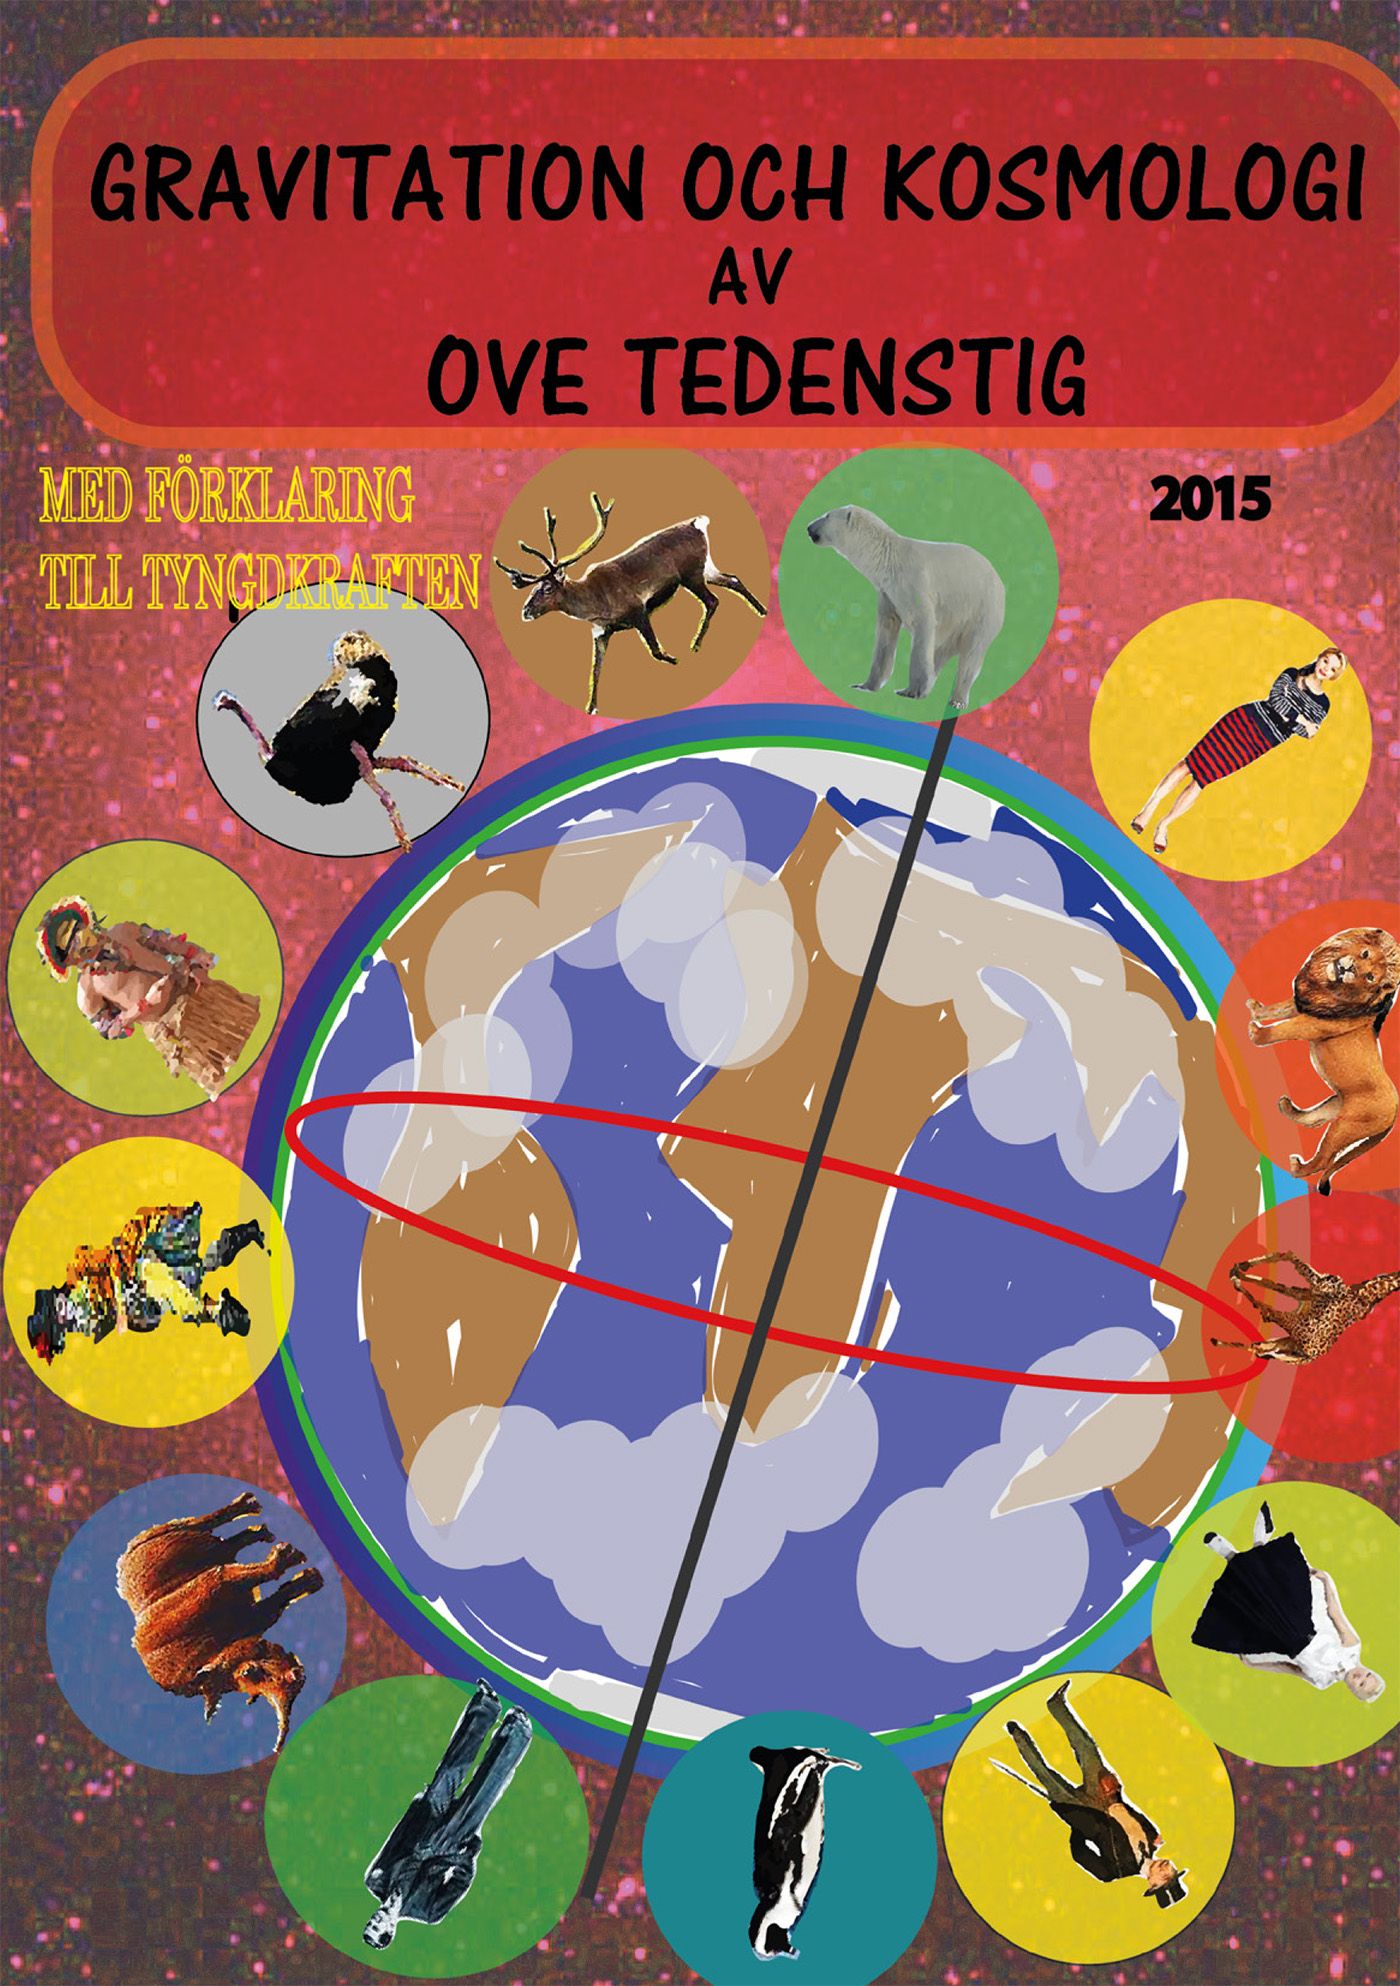 Gravitation och kosmologi 2015 edition 1, e-bok av Ove Tedenstig